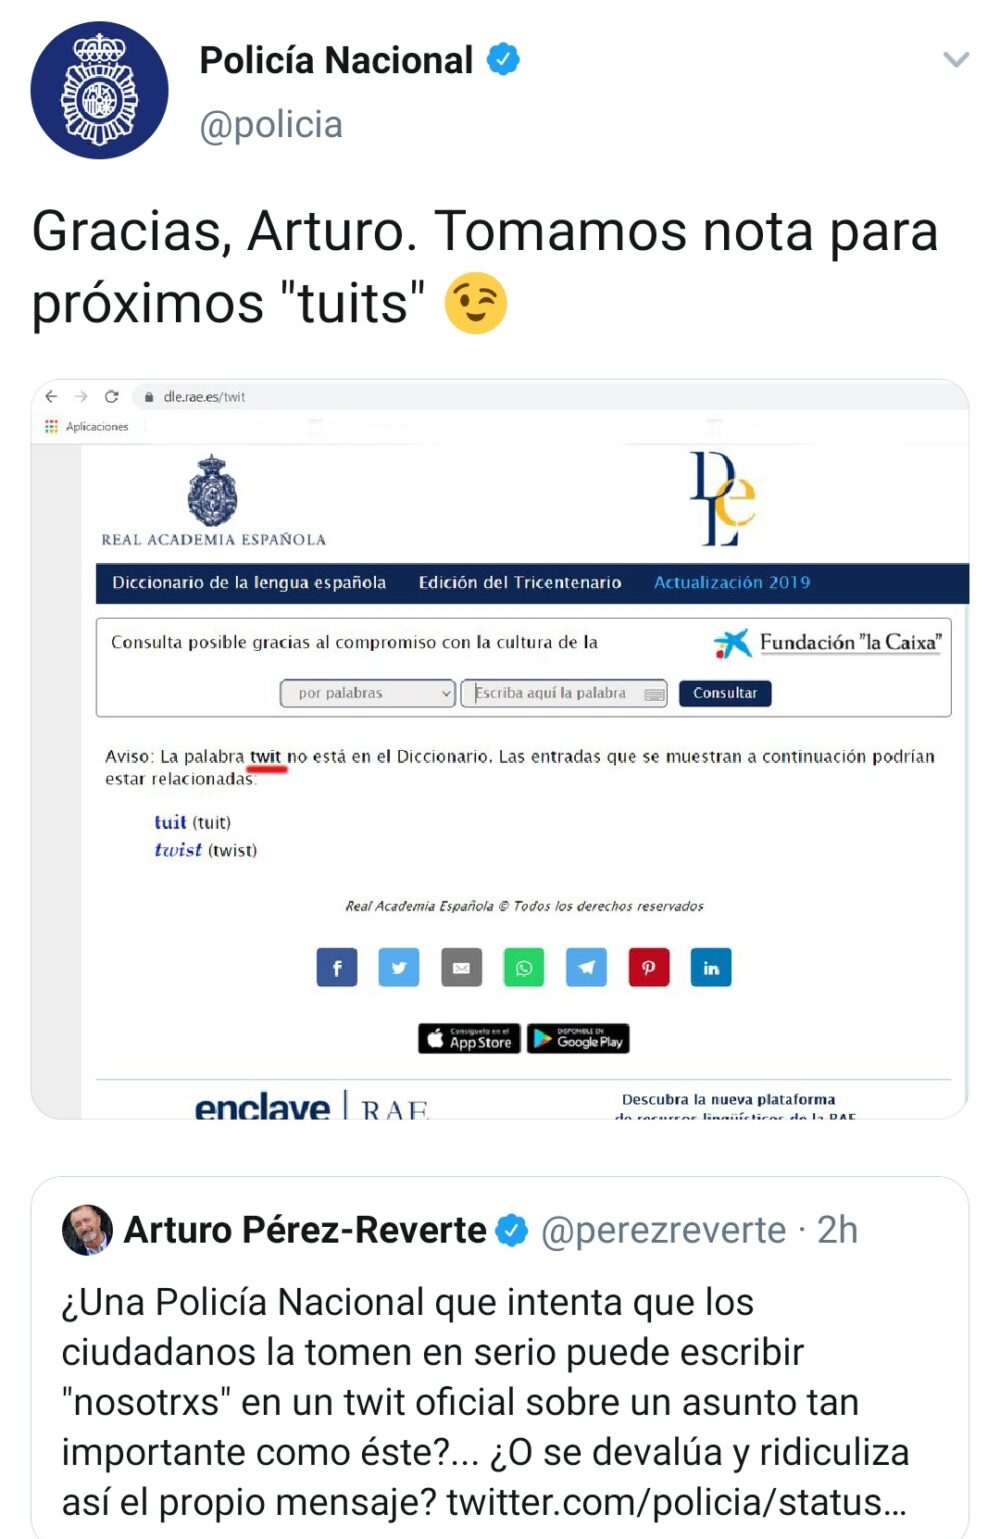 Arturo Pérez-Reverte vs la Policía Nacional: FIGHT!